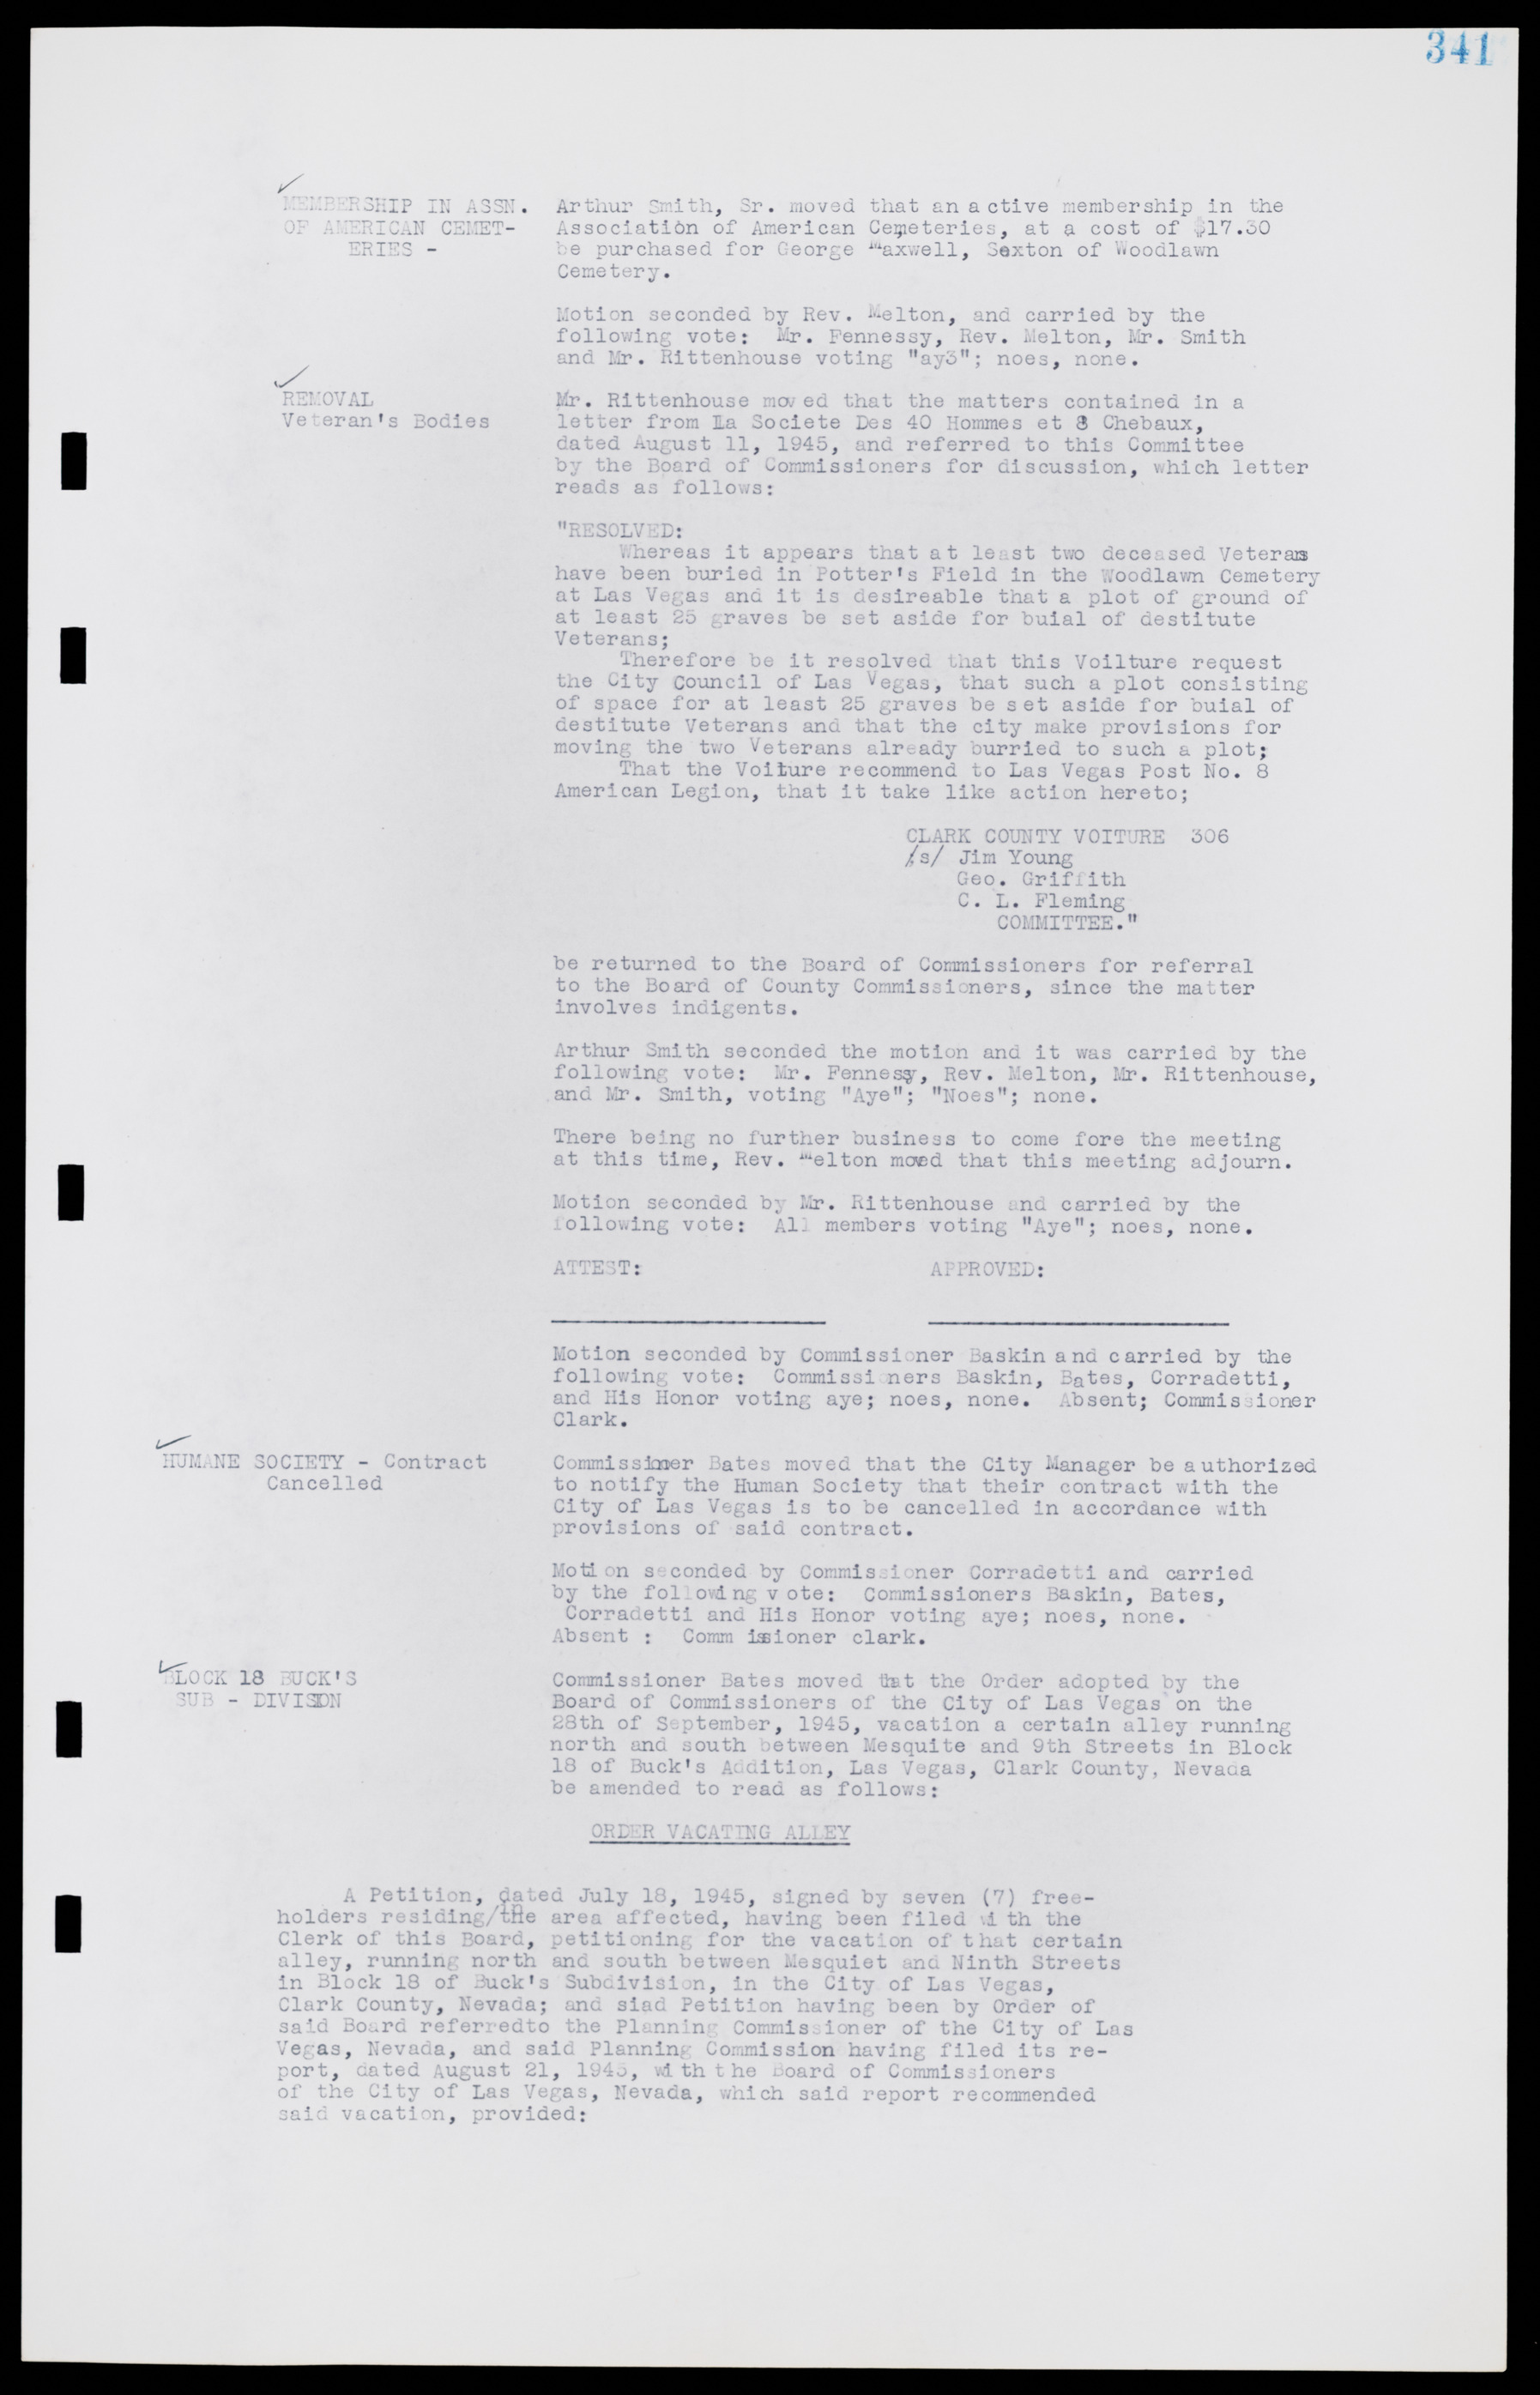 Las Vegas City Commission Minutes, August 11, 1942 to December 30, 1946, lvc000005-366